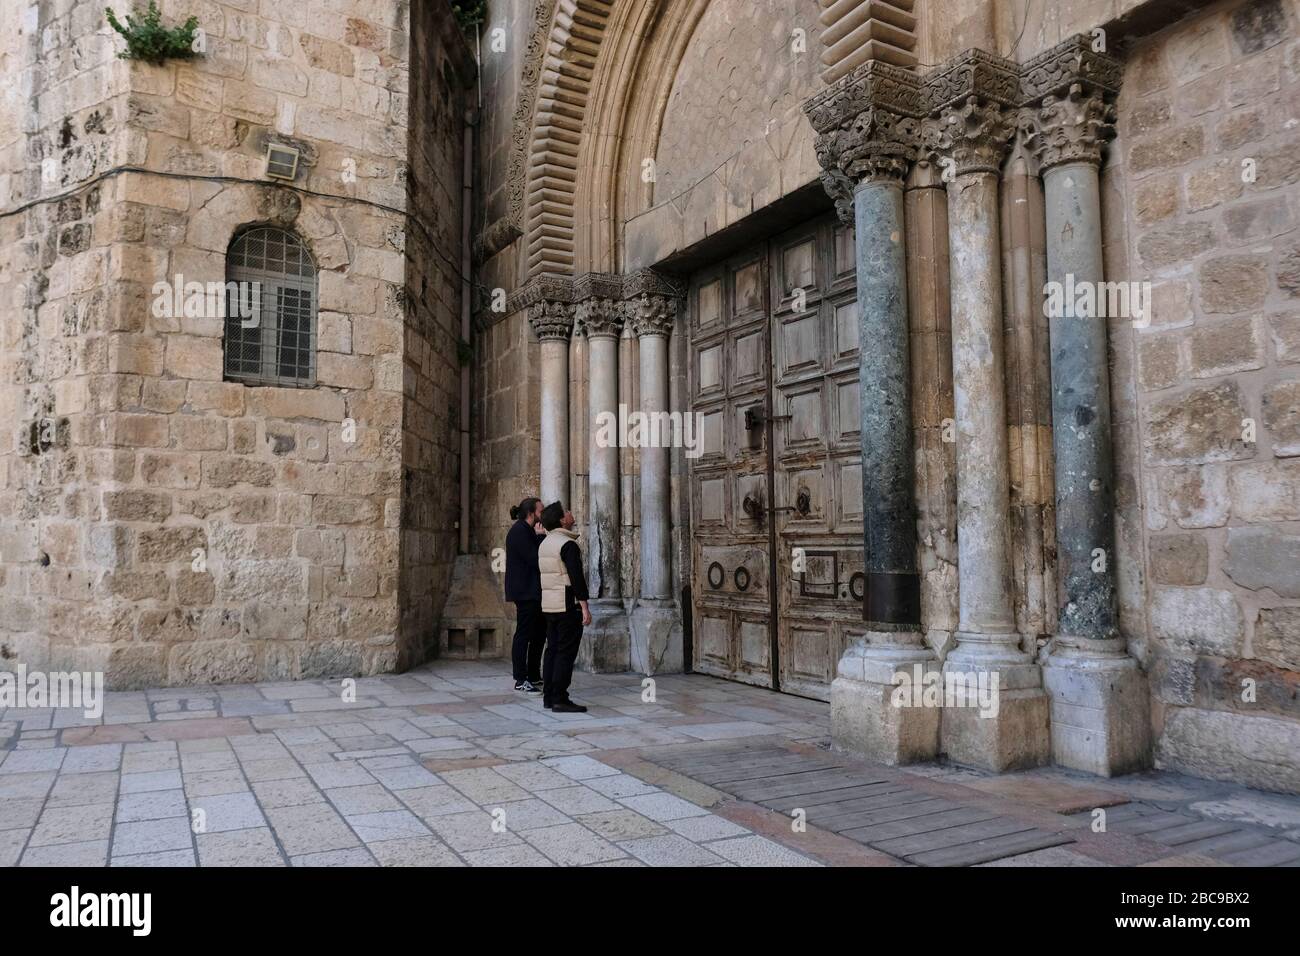 Les visiteurs se tiennent devant la porte fermée de l'Église du Saint-Sépulcre, au milieu de la crise pandémique Coronavirus COVID-19 dans la vieille ville de Jérusalem, Israël Banque D'Images